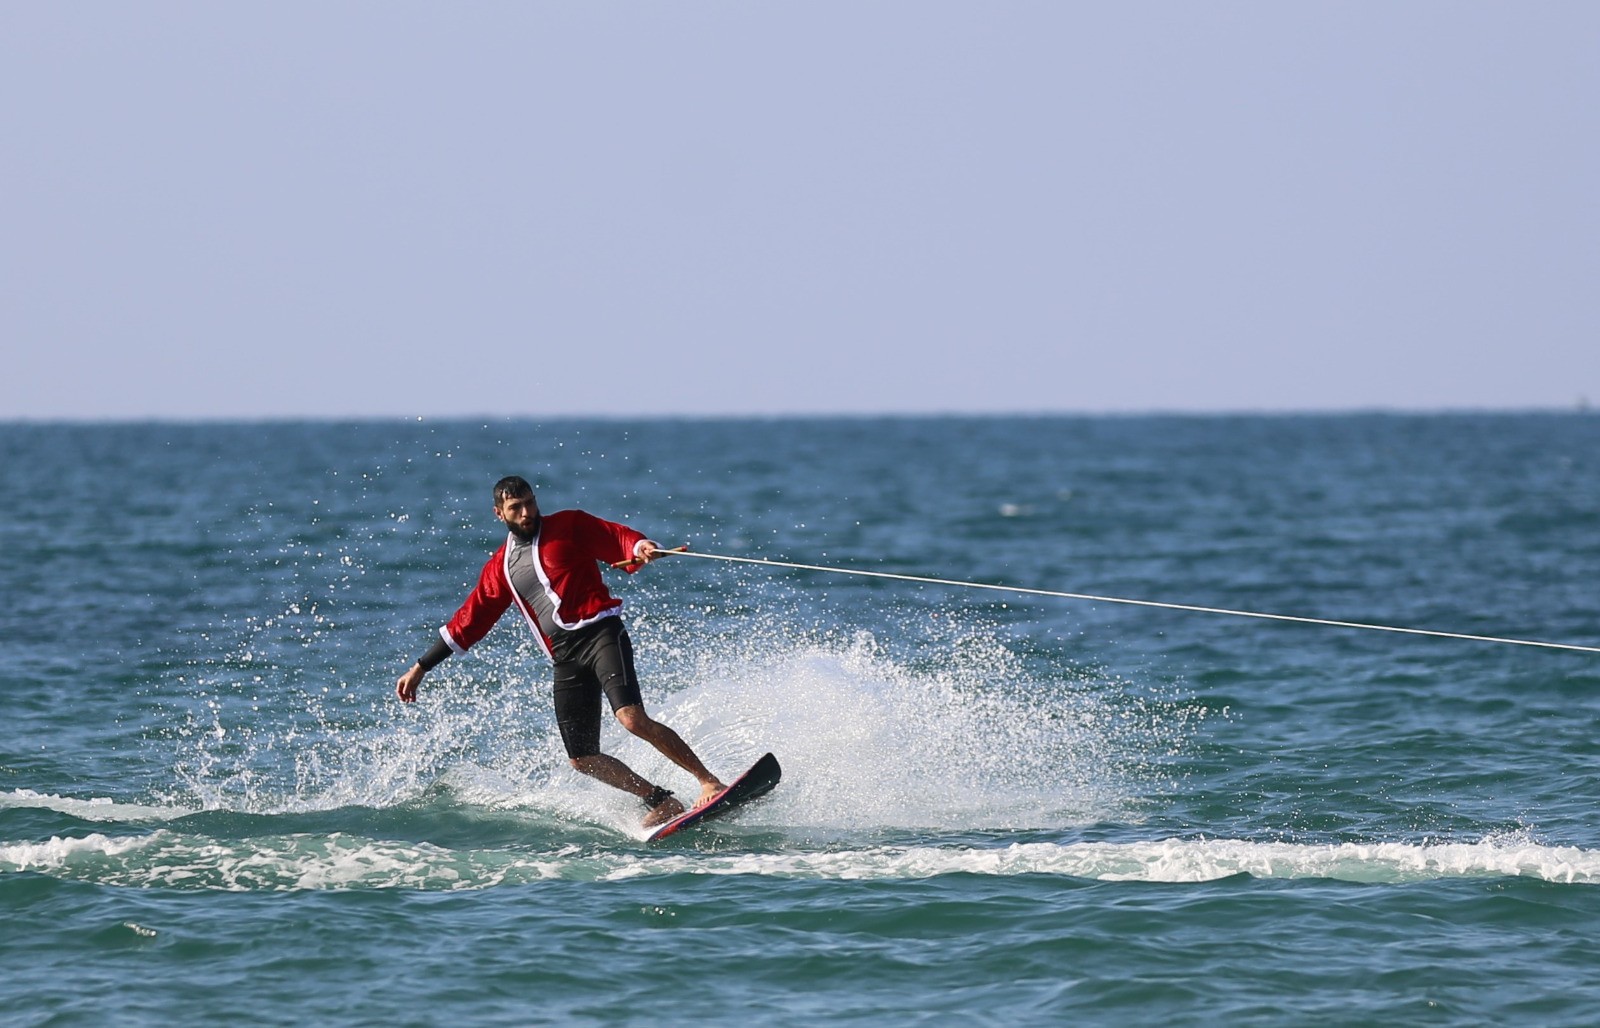 الاتحاد الفلسطيني للشراع والتجديف ينظّم فعالية للتزلّج على شاطئ بحر غزّة.jpg